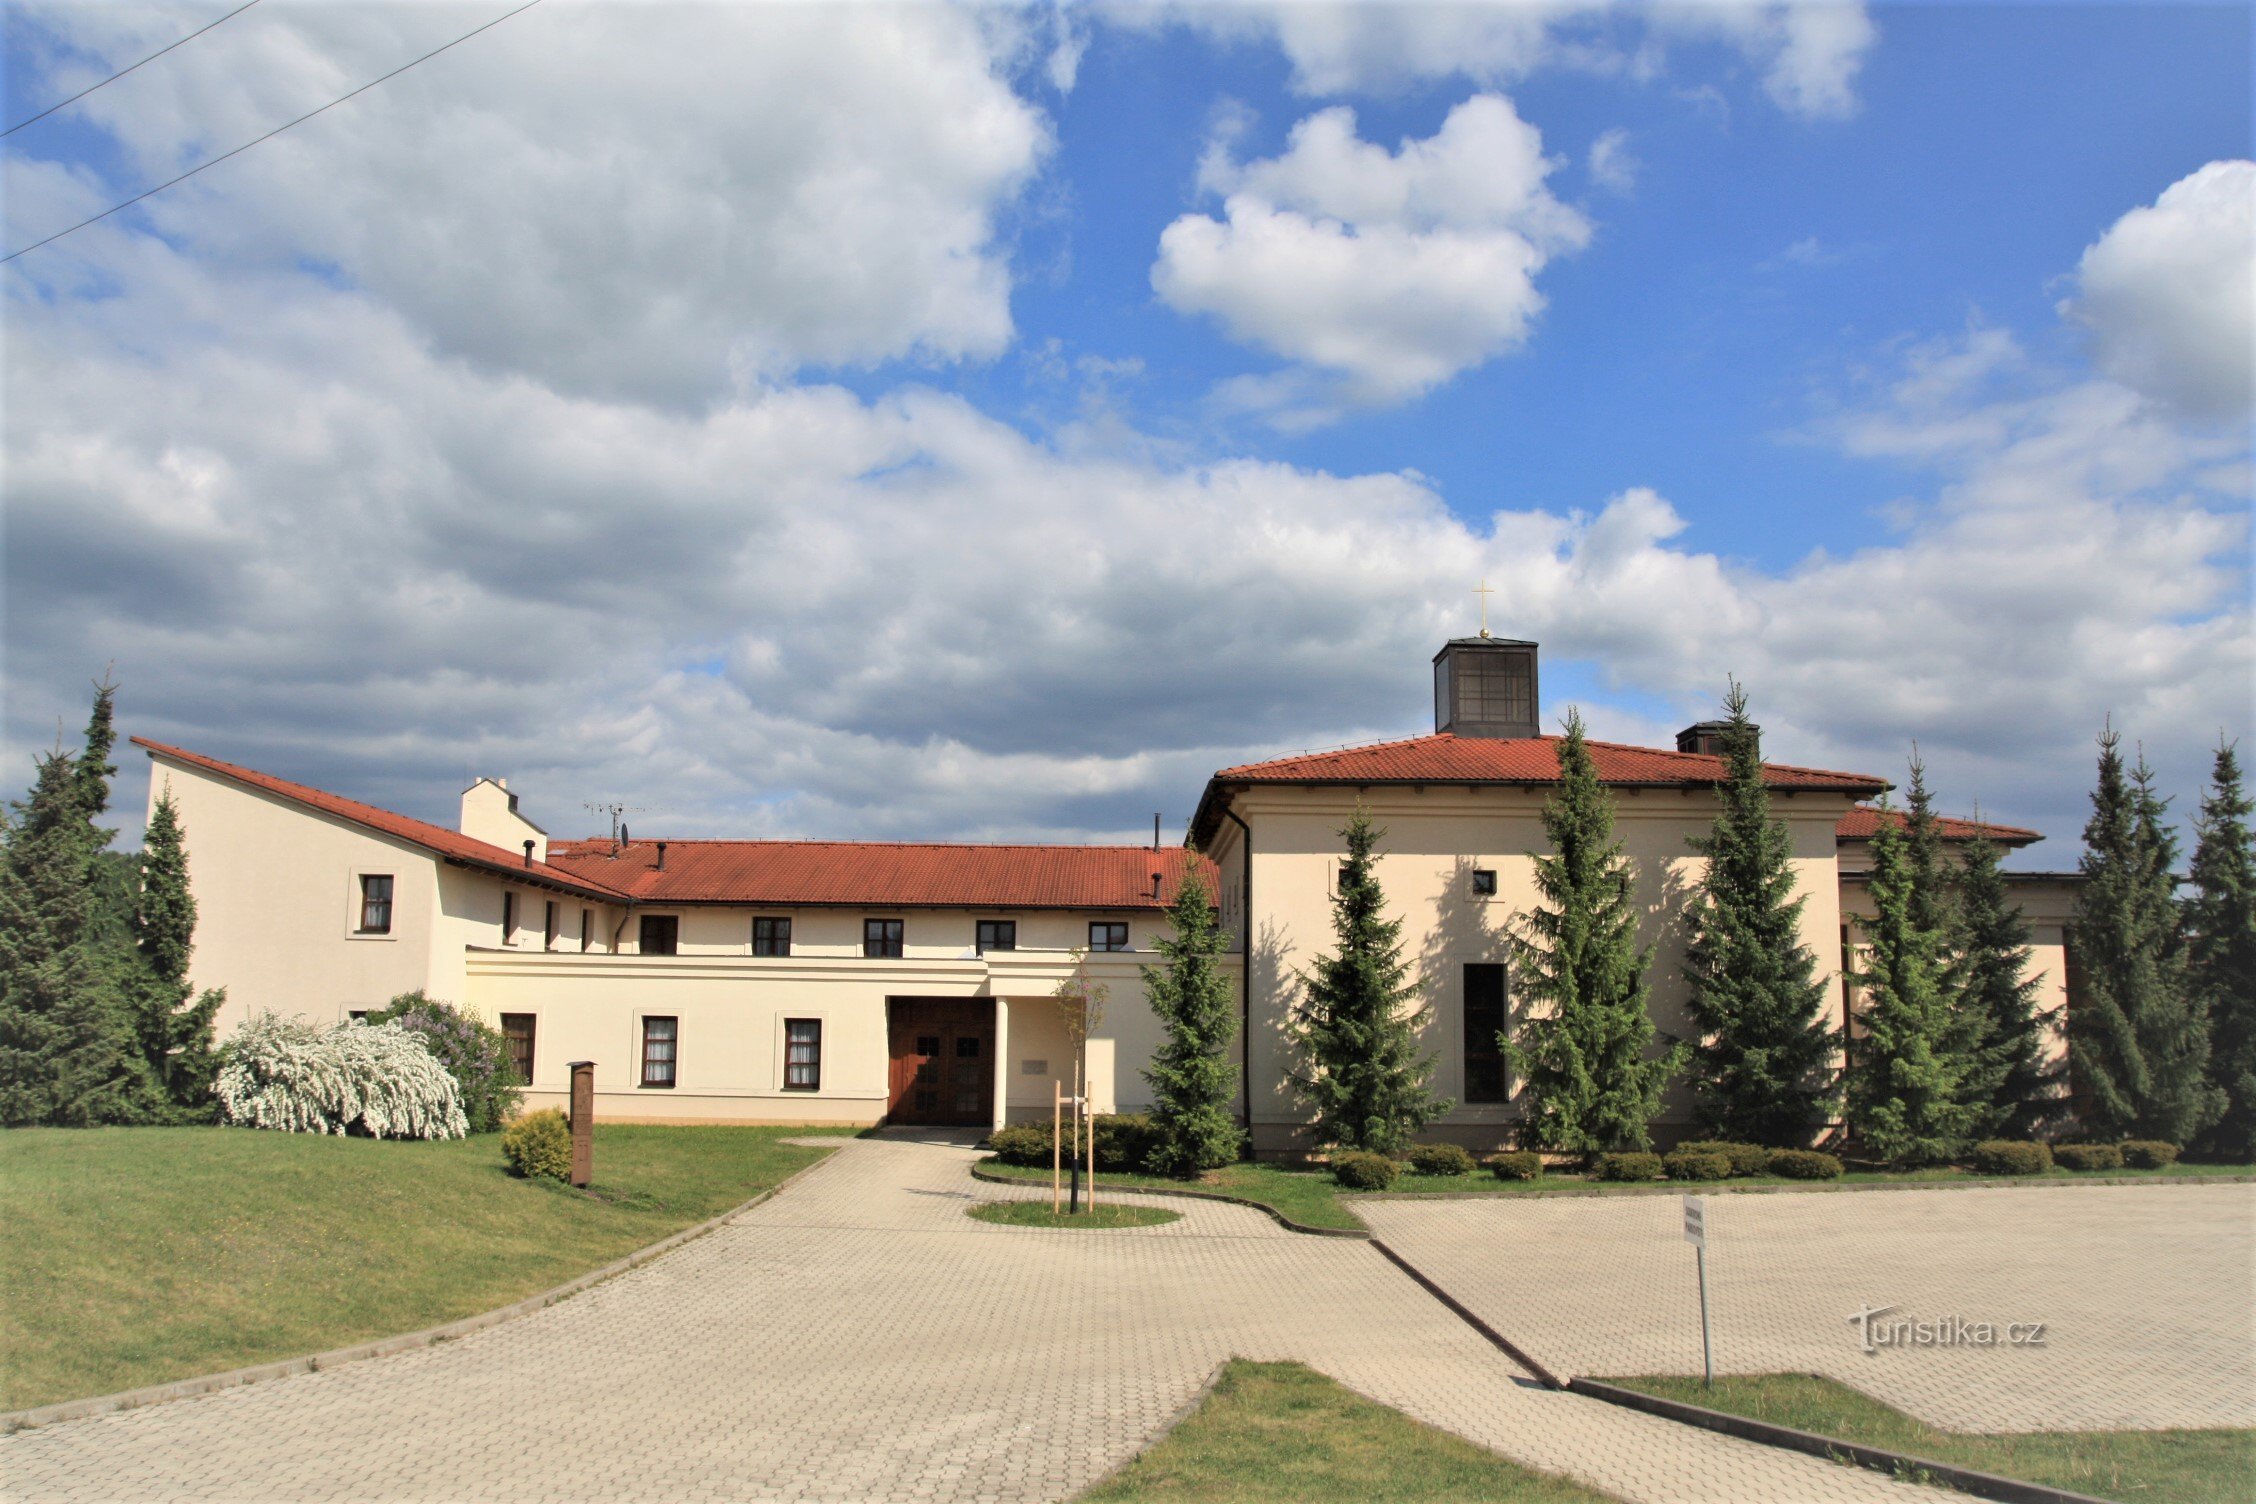 Traseul începe în Soběšice, lângă mănăstirea Klarisek